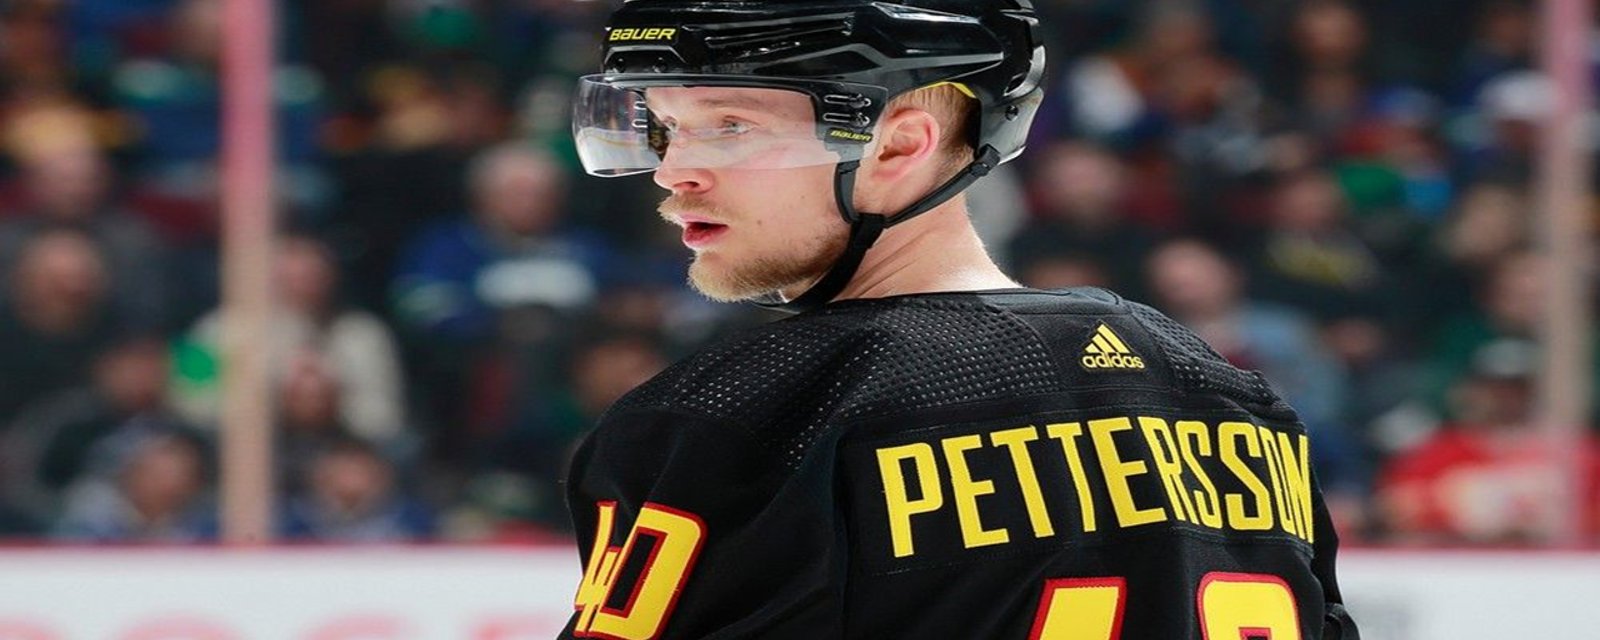 On connait maintenant les détails du nouveau contrat d'Elias Pettersson avec les Canucks